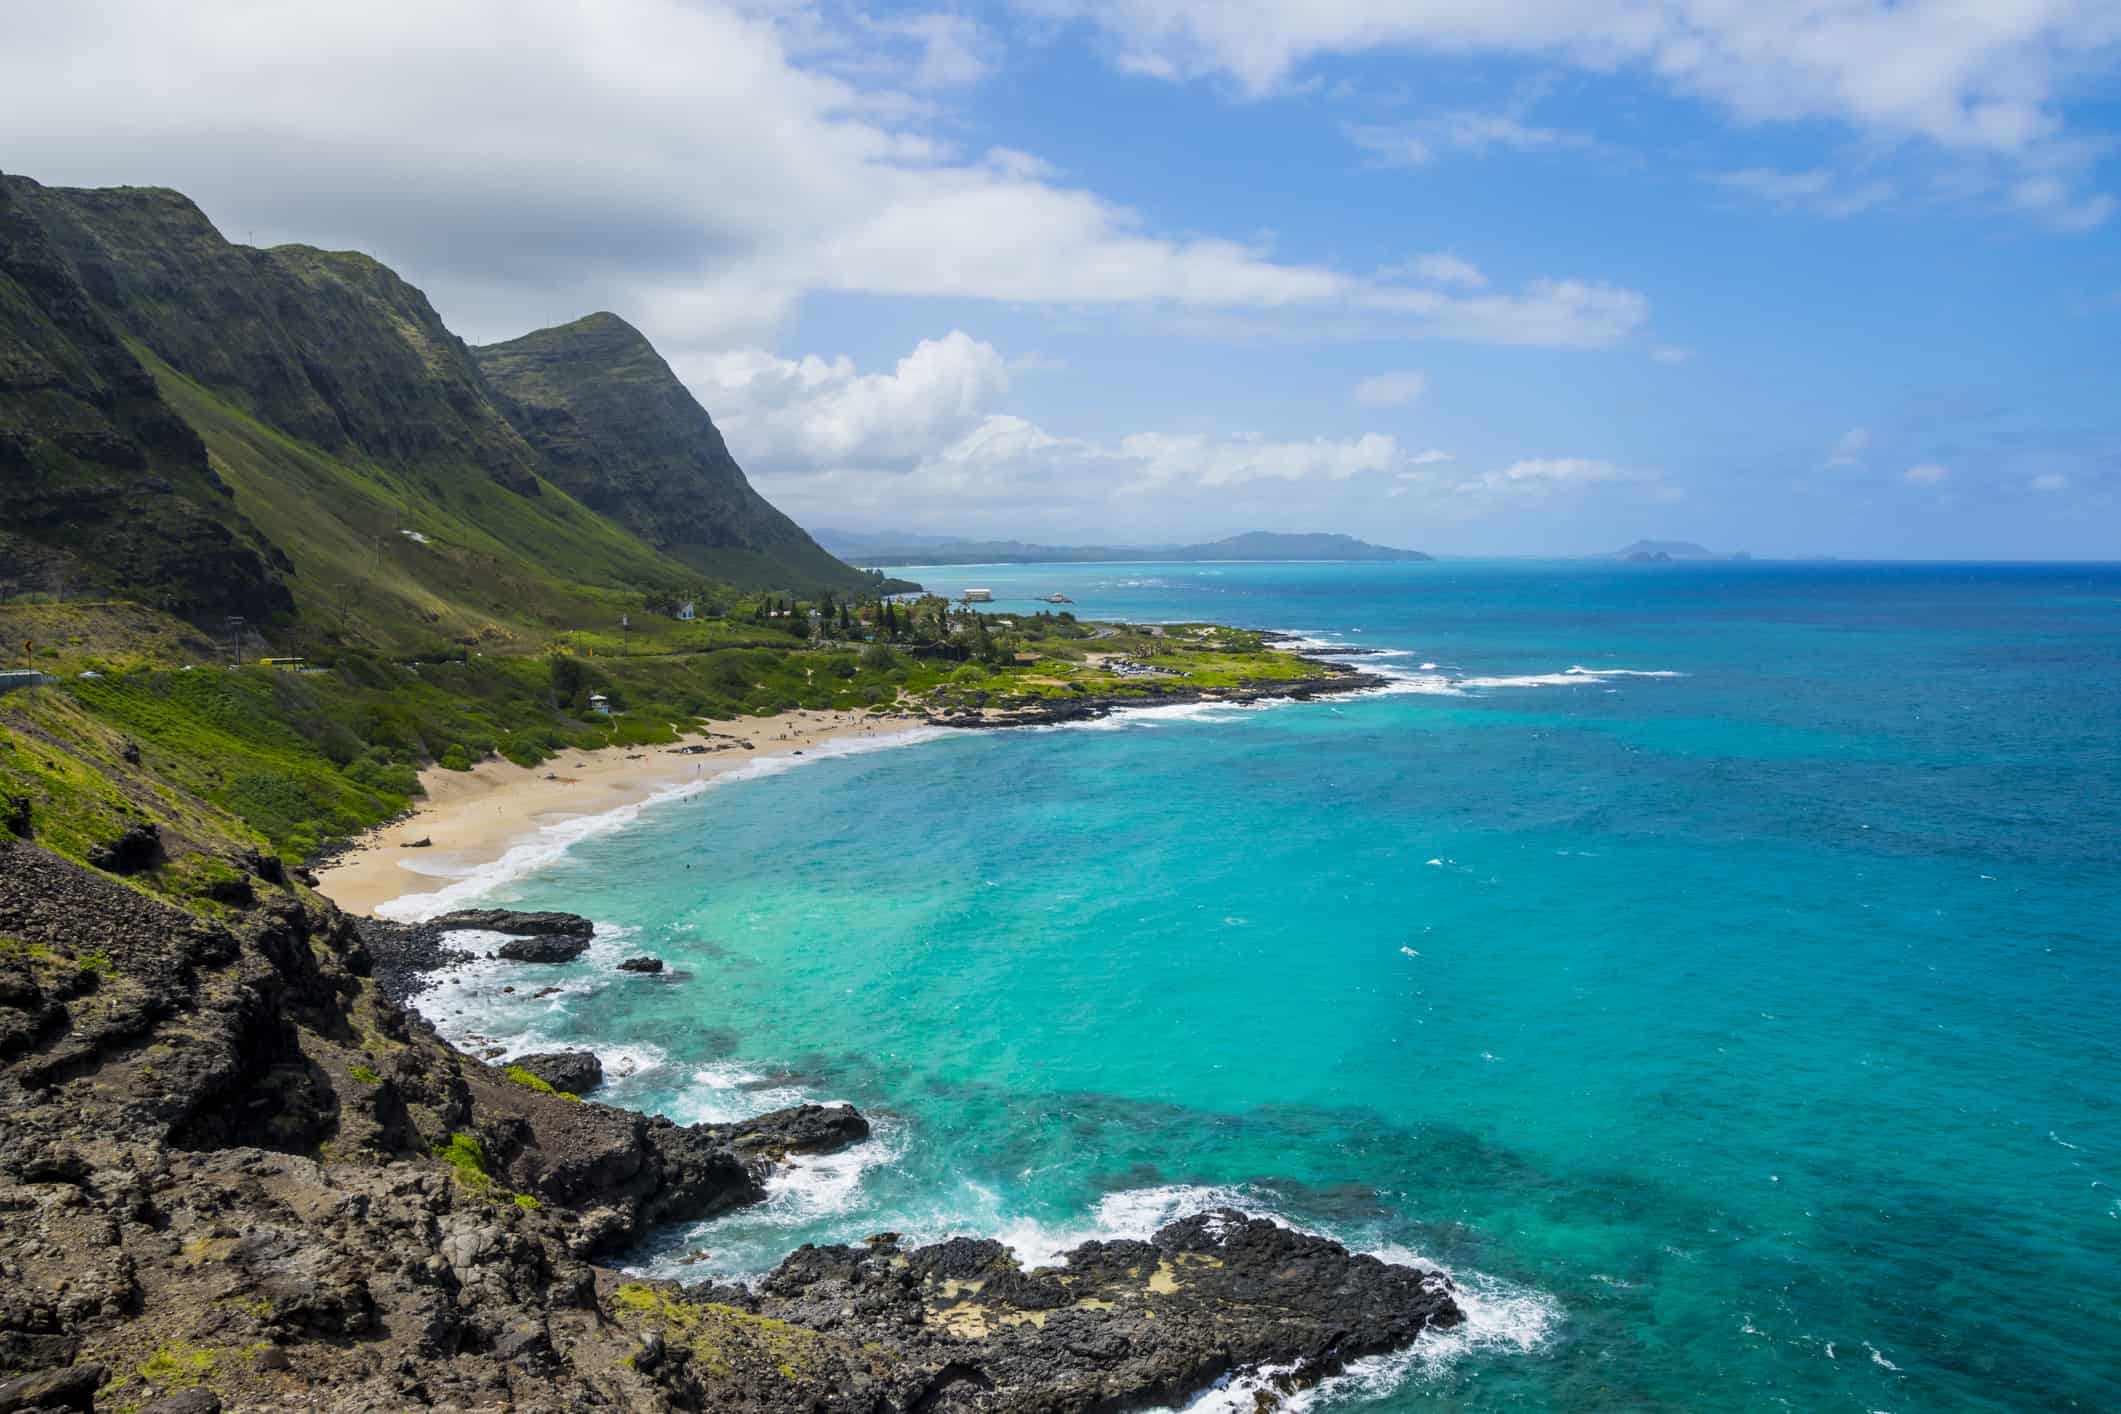 A rocky shoreline in Hawaii